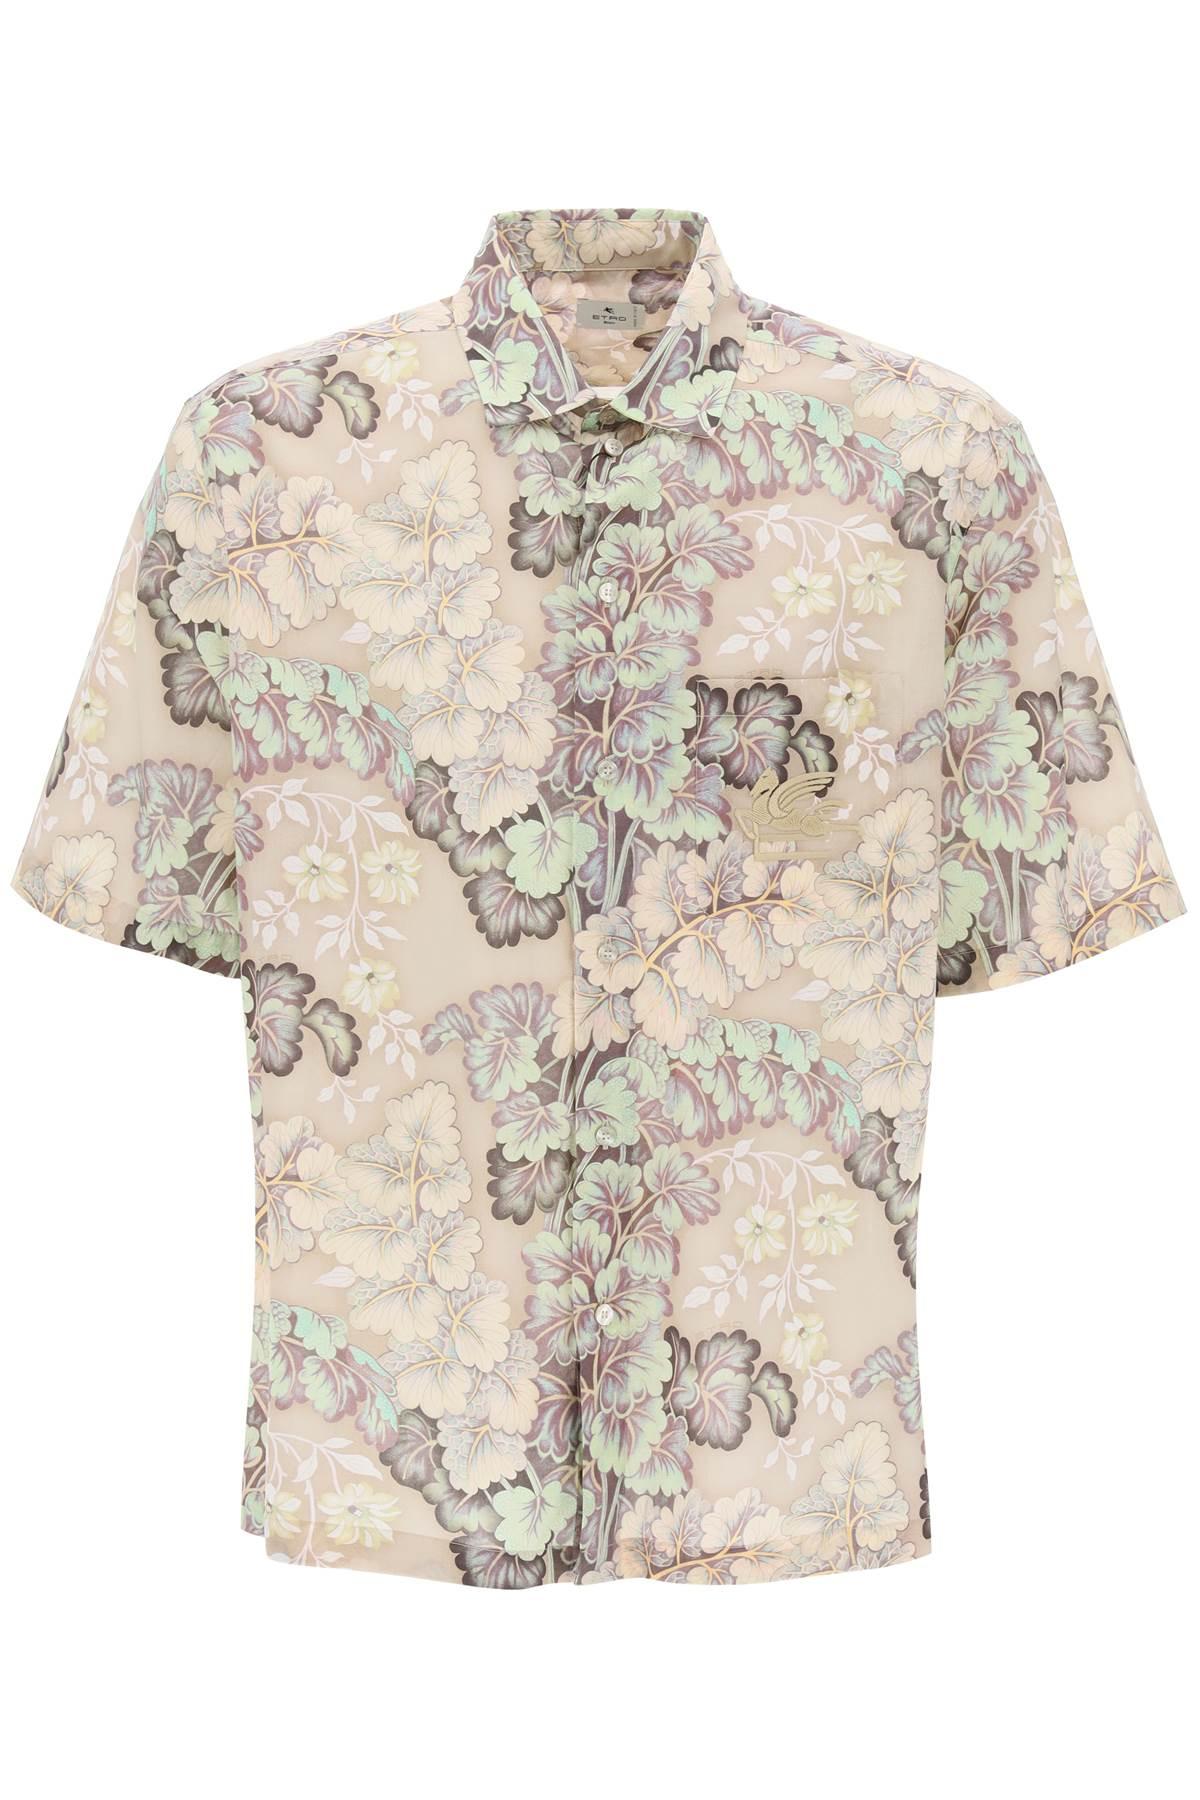 Etro Floral Cotton Voile Short-Sleeve Shirt - JOHN JULIA